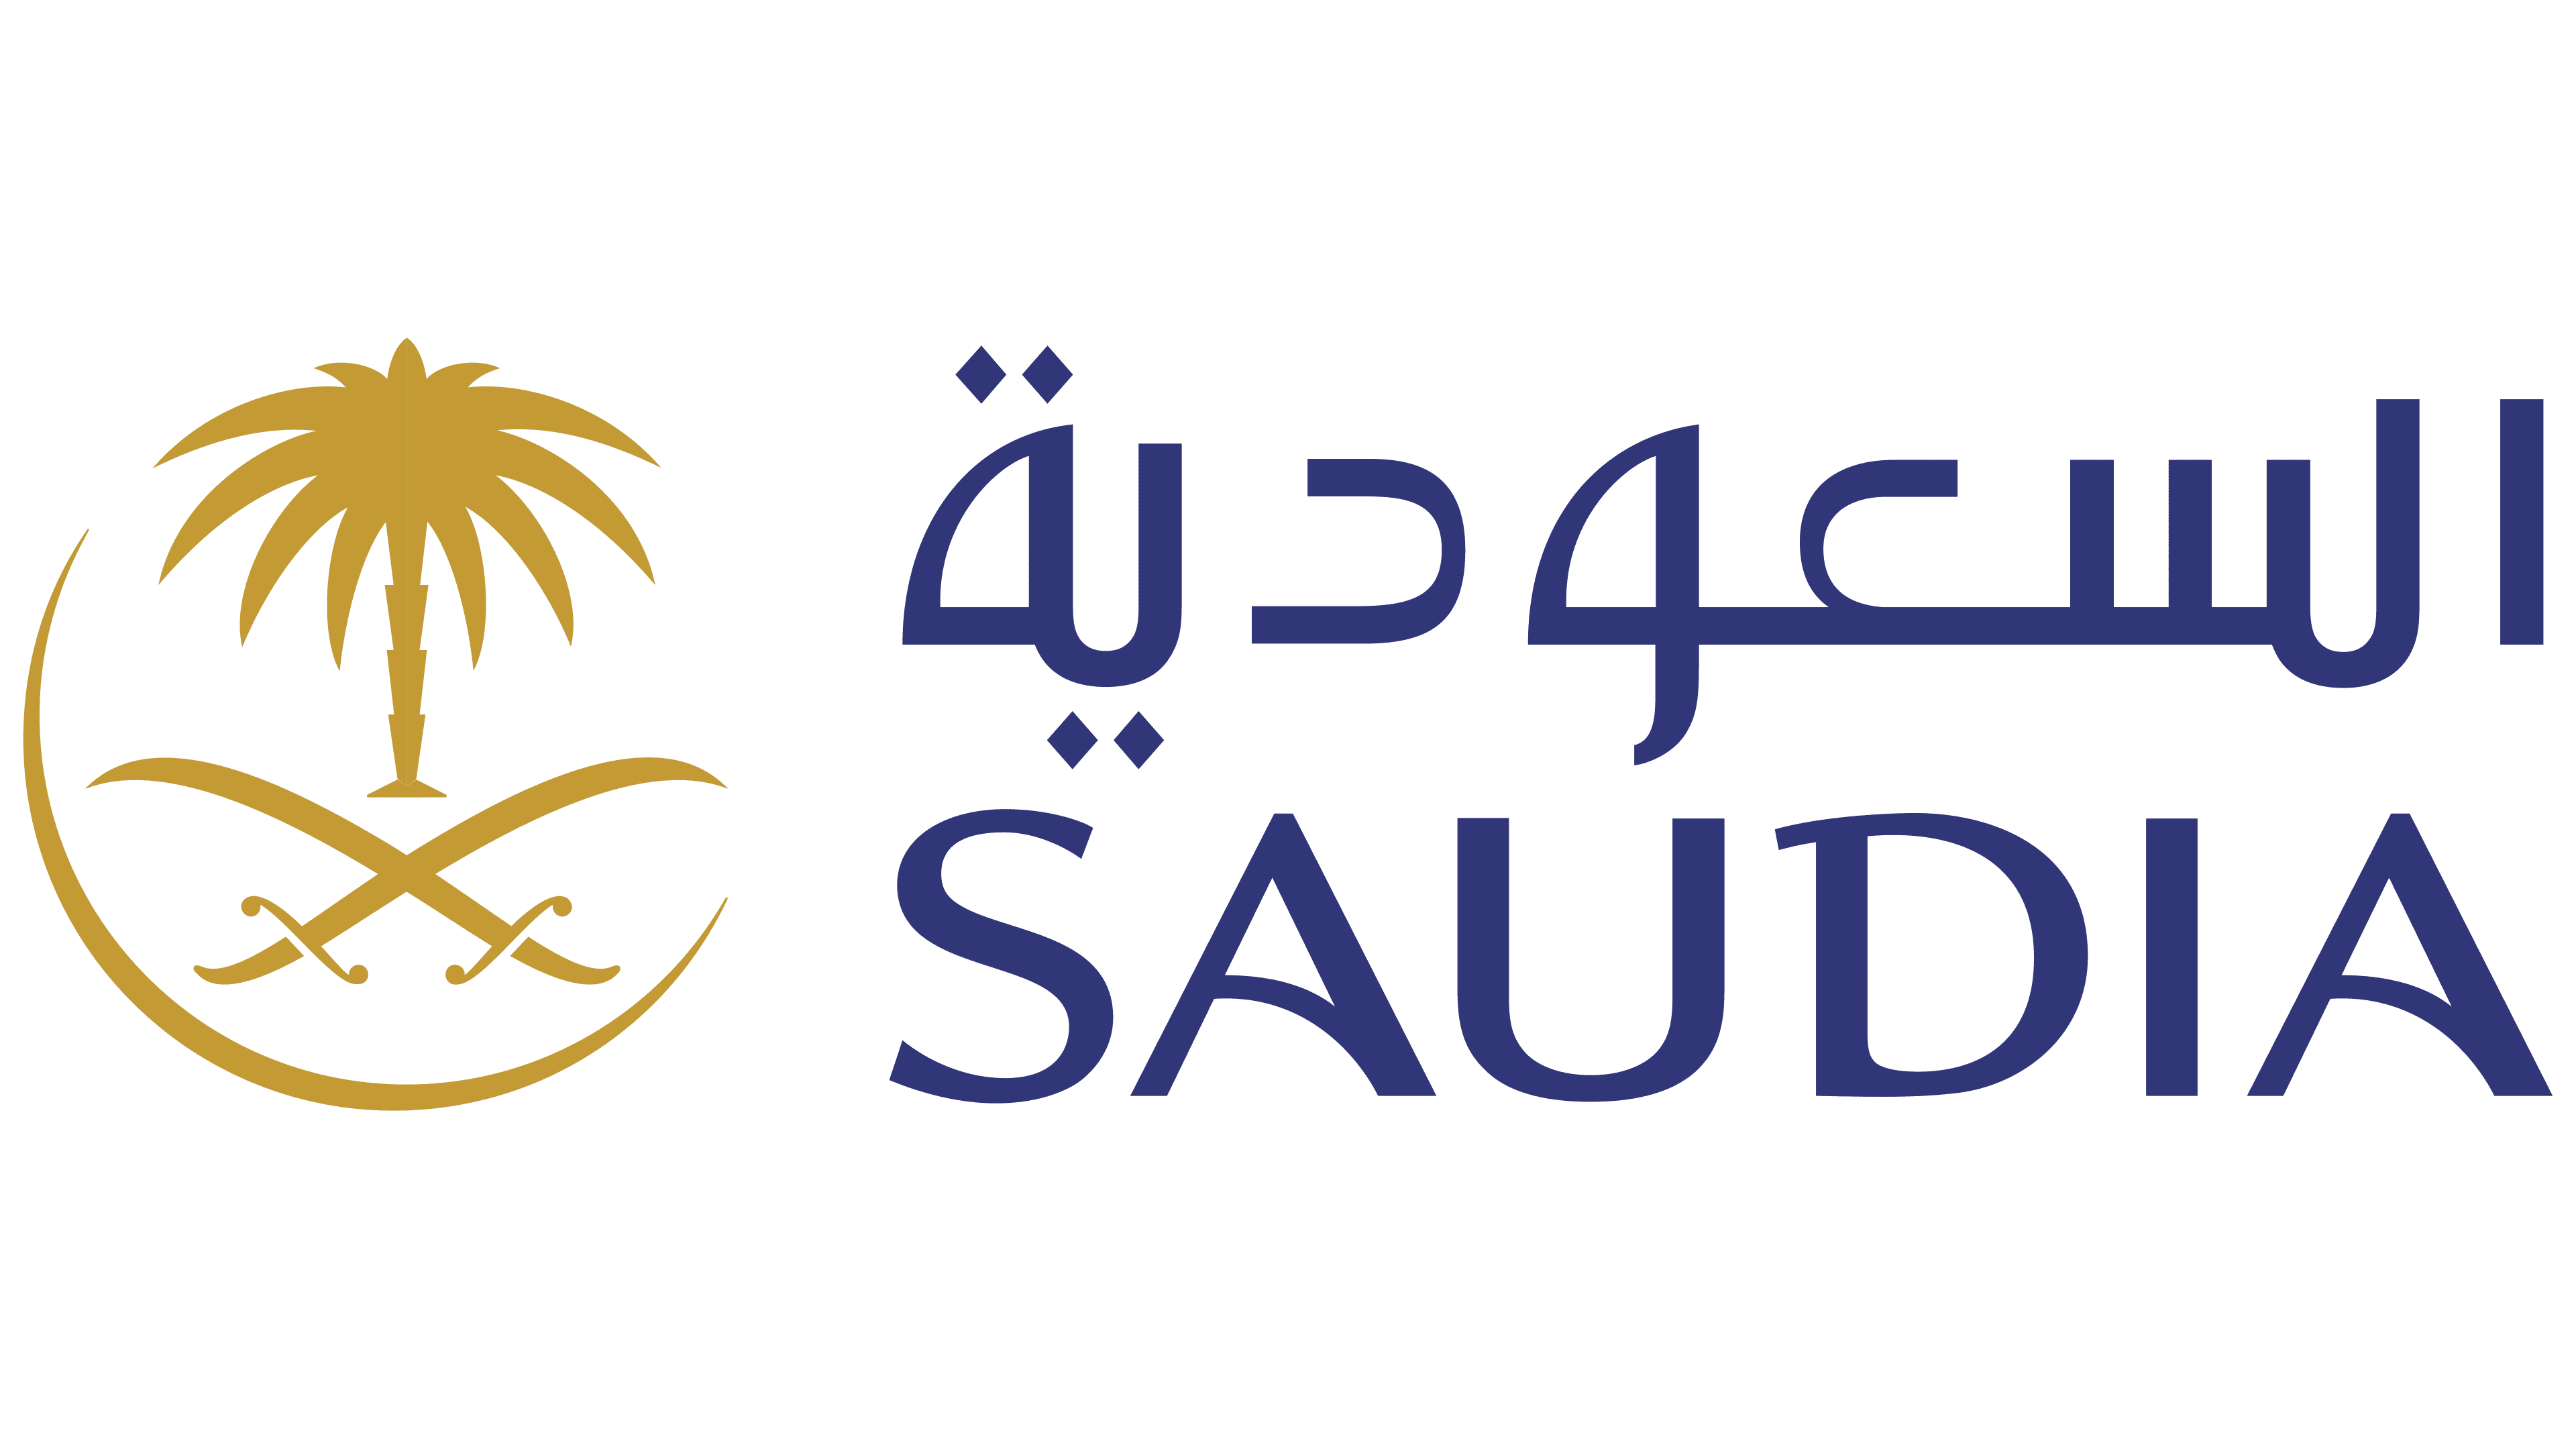 Saudi-Arabian-Airlines-Logo